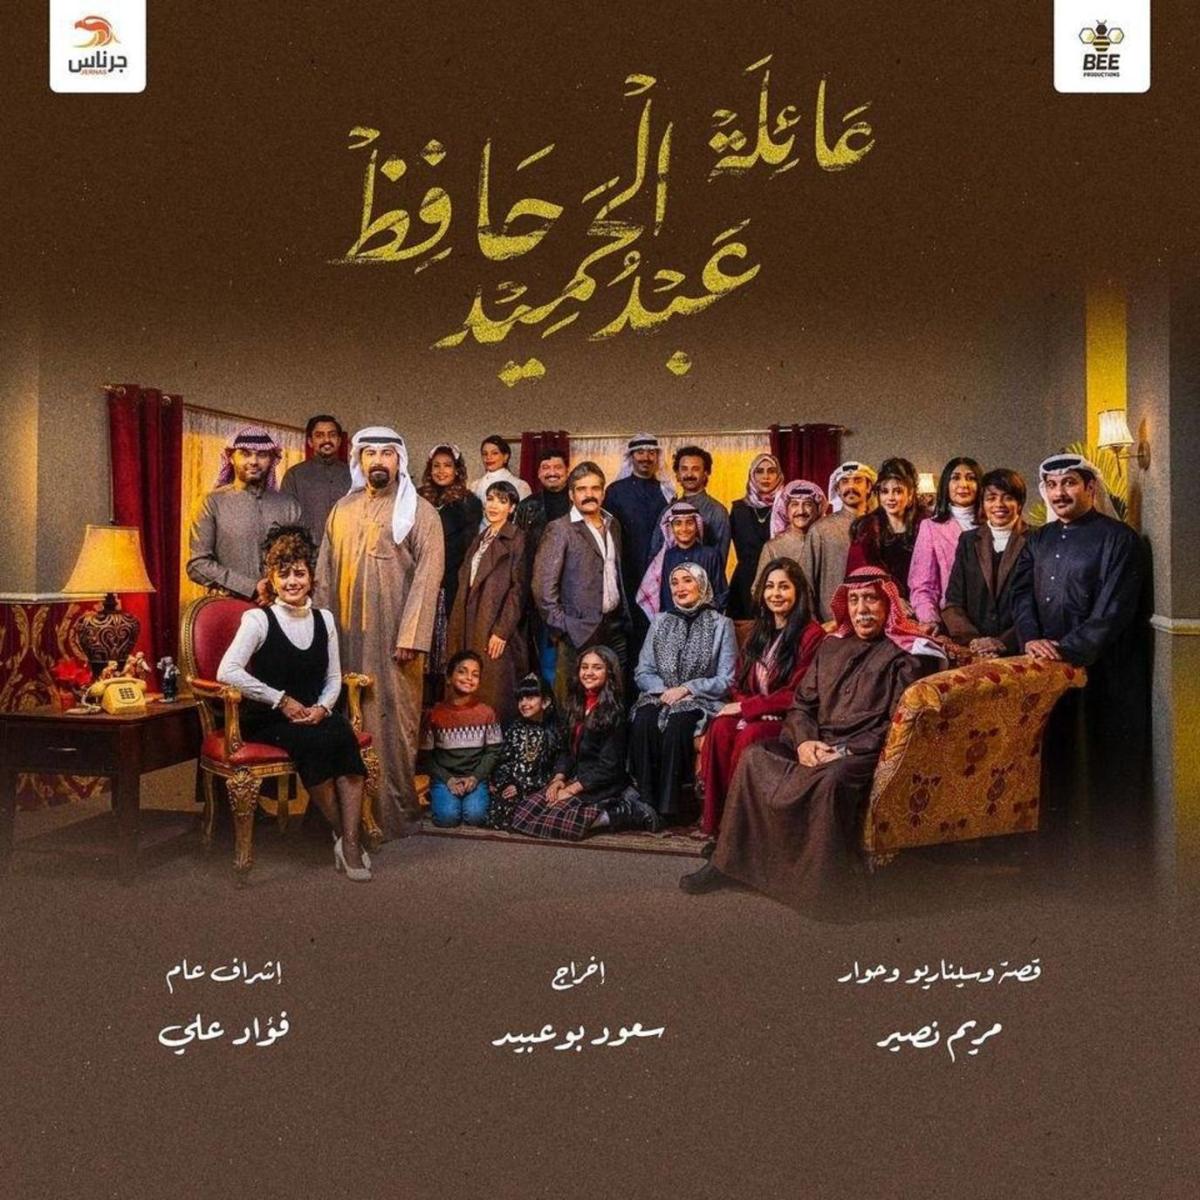 الخليجية 2022 مسلسلات رمضان أهم المسلسلات